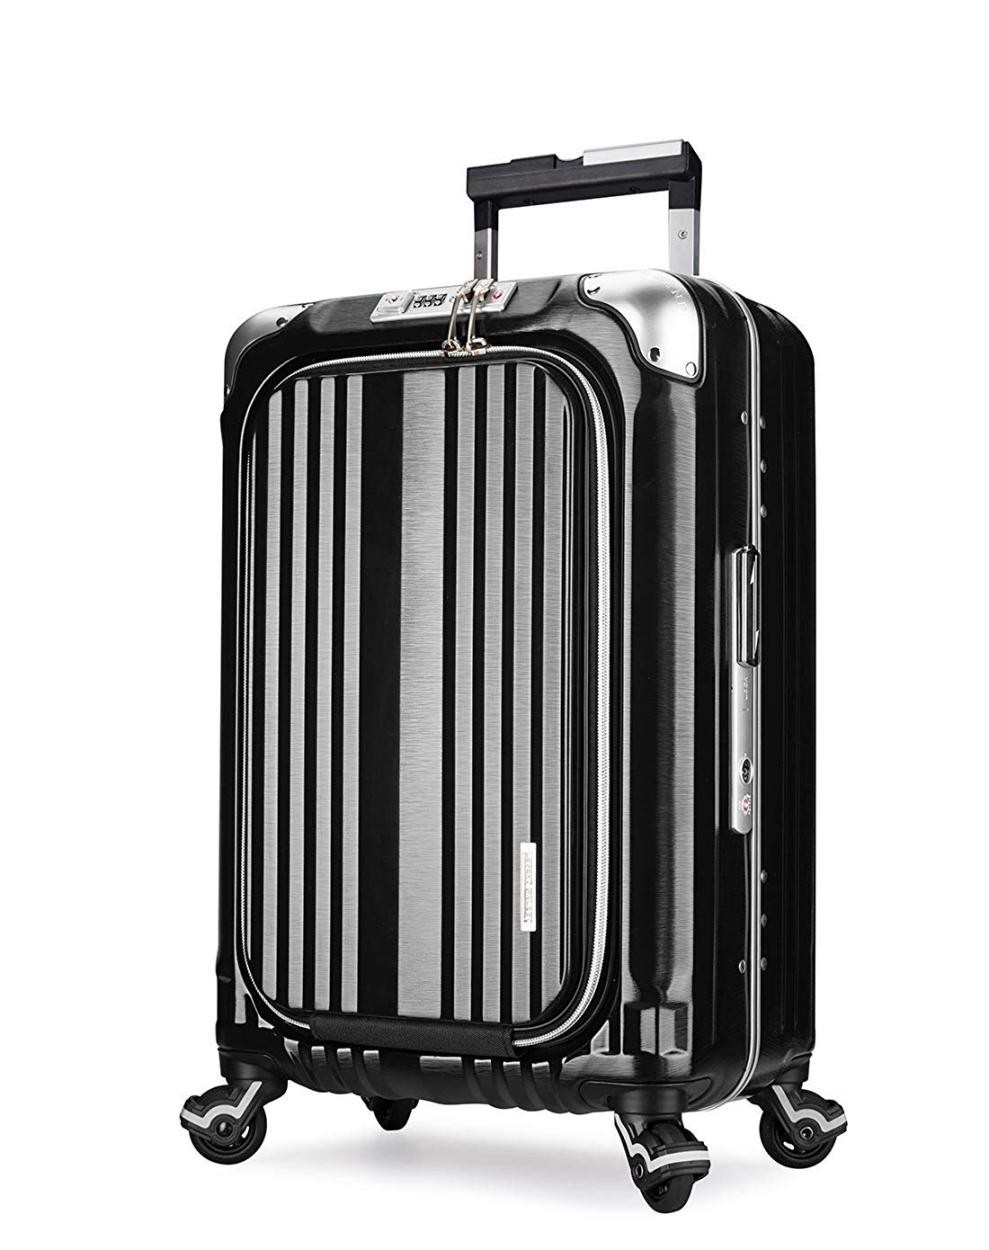 アウトレット スーツケース Mサイズ 中型 軽量 ビジネス キャリー ビジネスバッグ 無料受託 キャ...